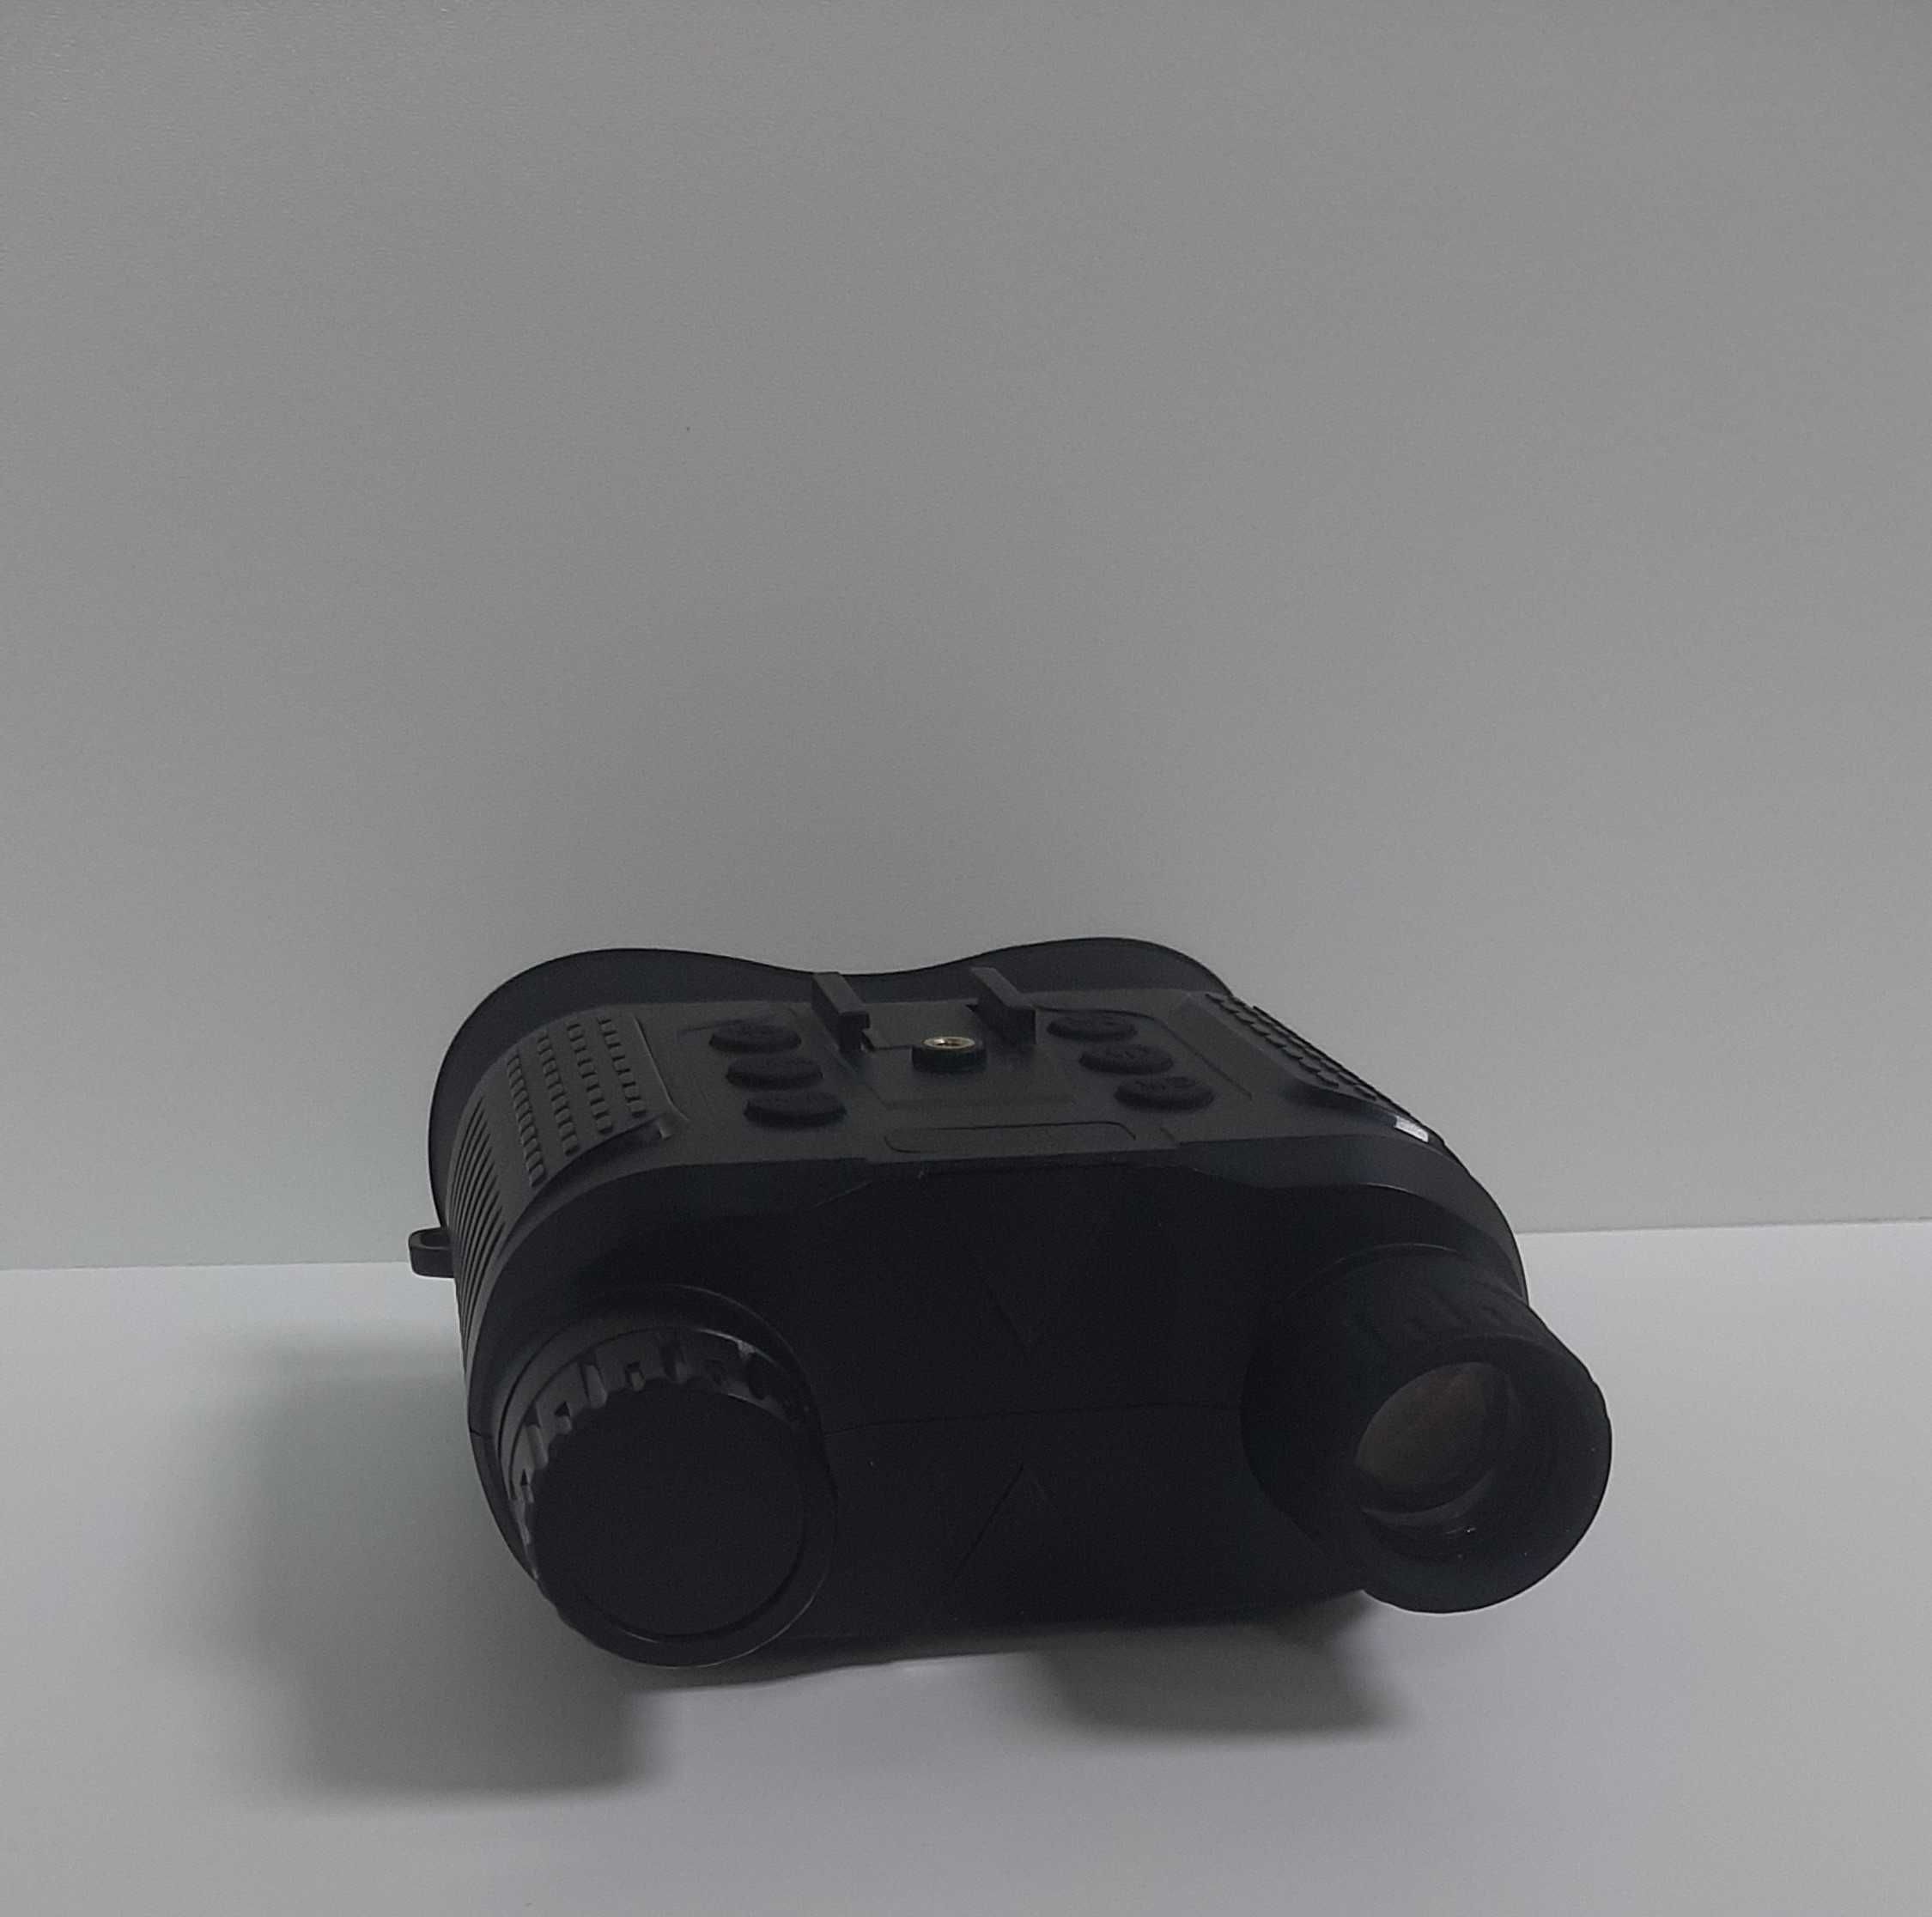 Бінокуляр прилад нічного бачення Night Vision NV8160